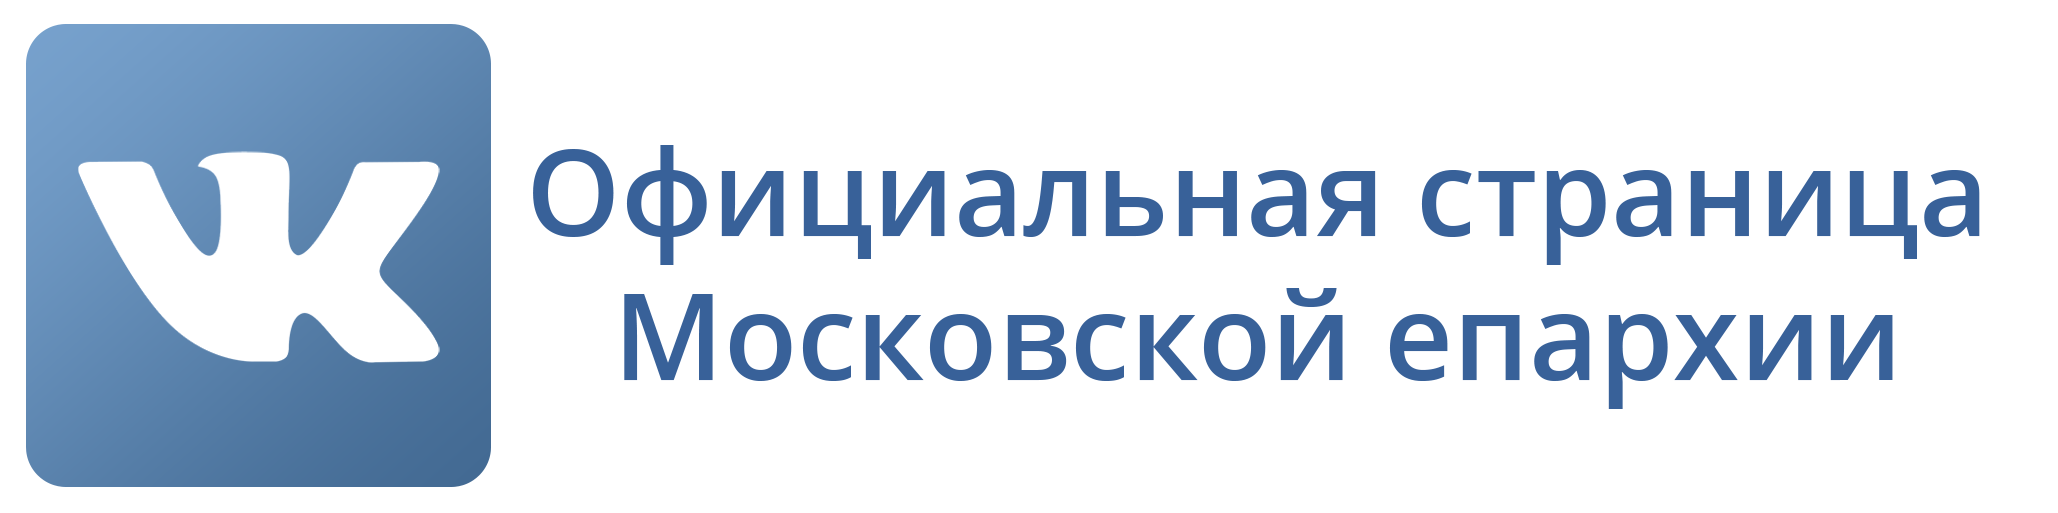 Официальная страница Московской епархии в ВКонтакте